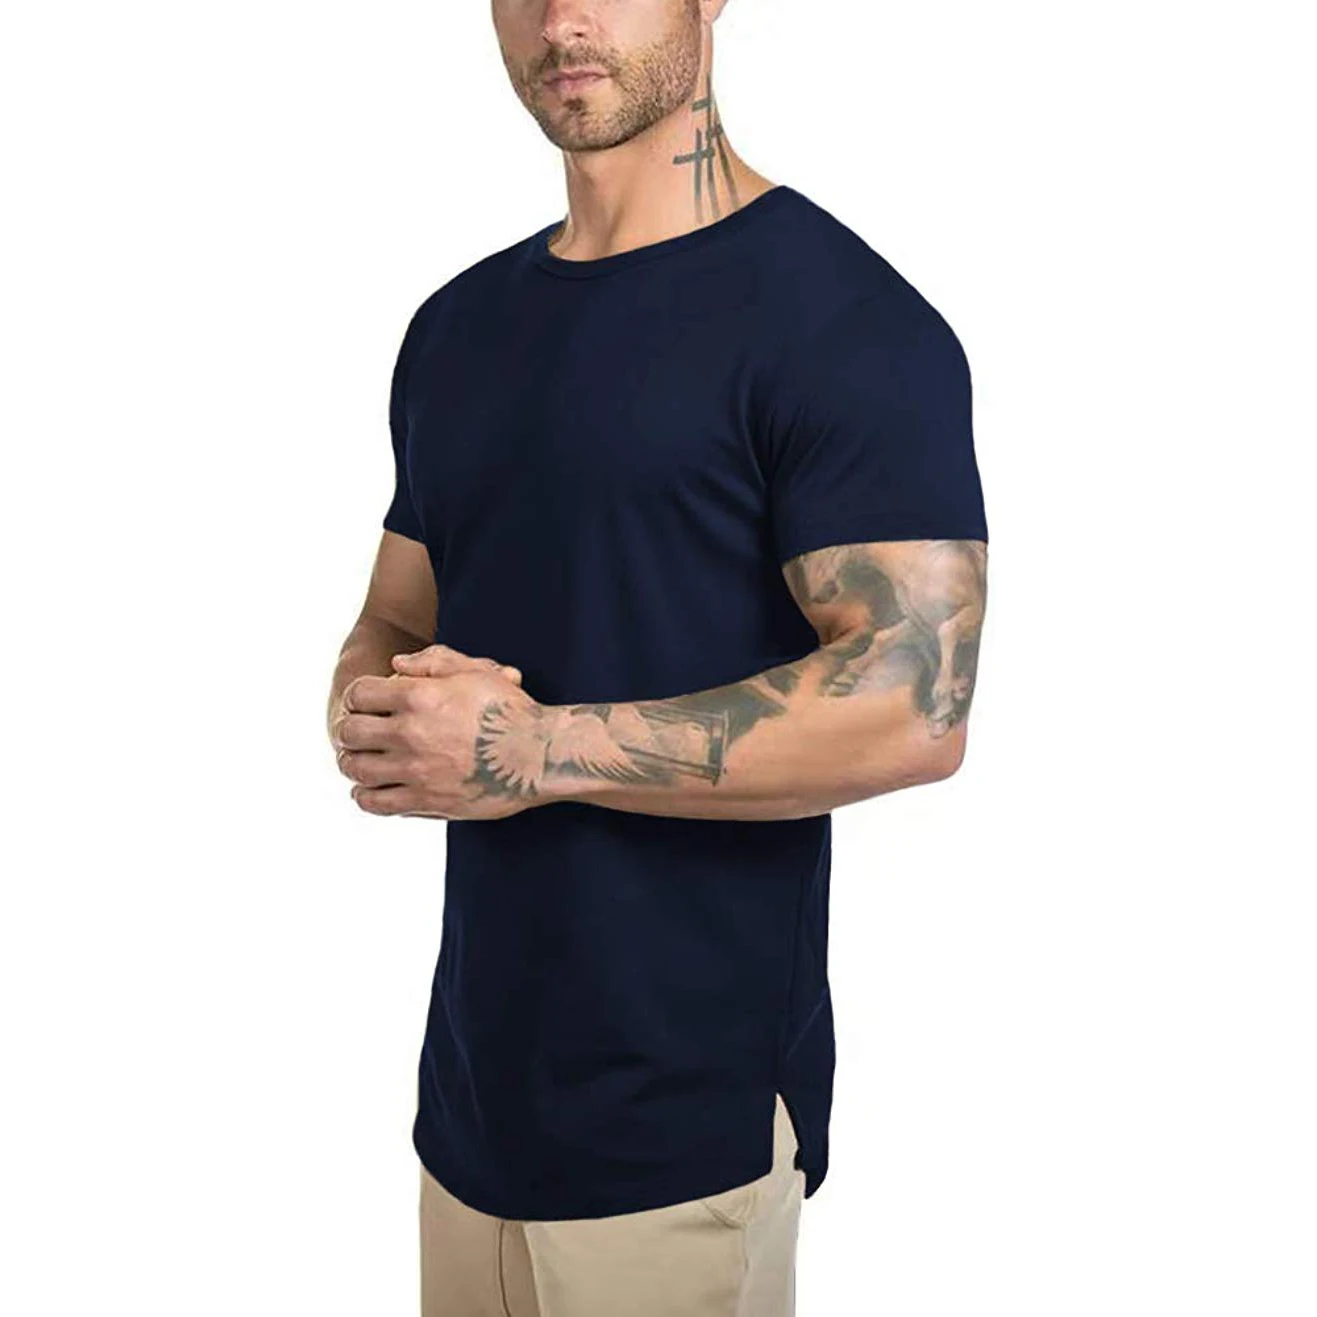 Wholesale Plain 95 Cotton 5 Spandex Muscle Fit Sports T Shirts Mens ...